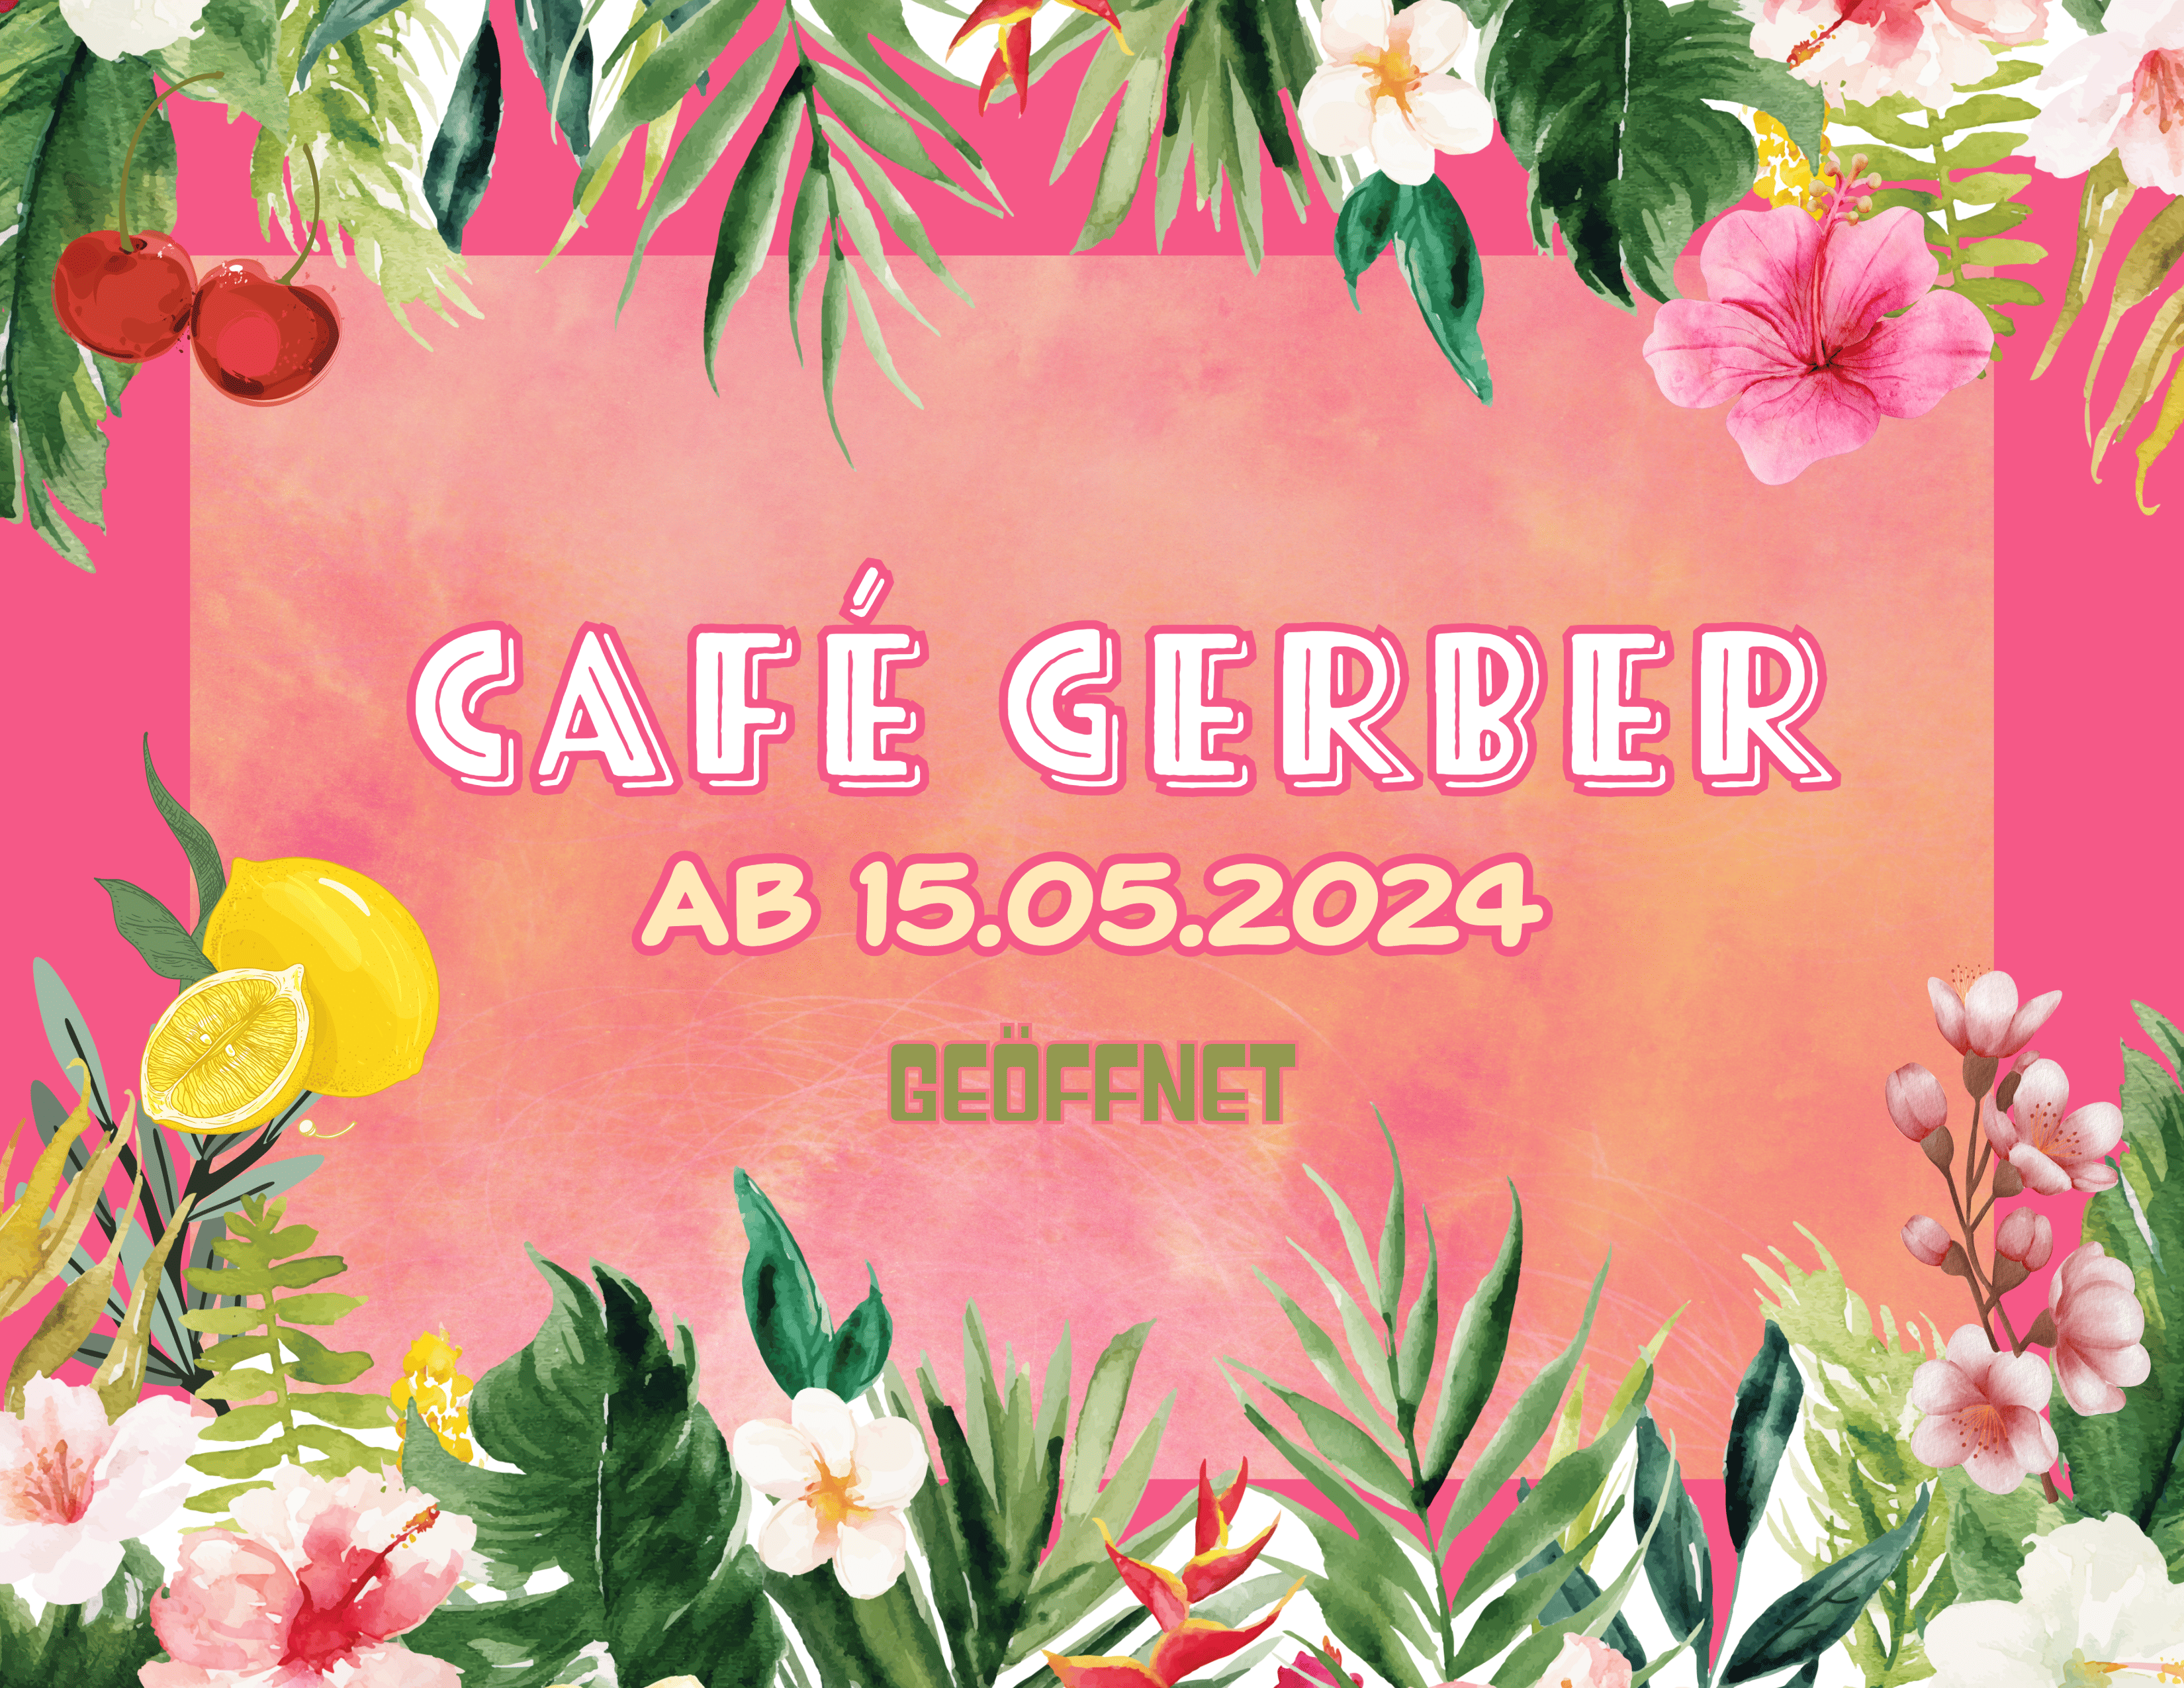 Café Gerber geöffnet! Sommersaison startet!